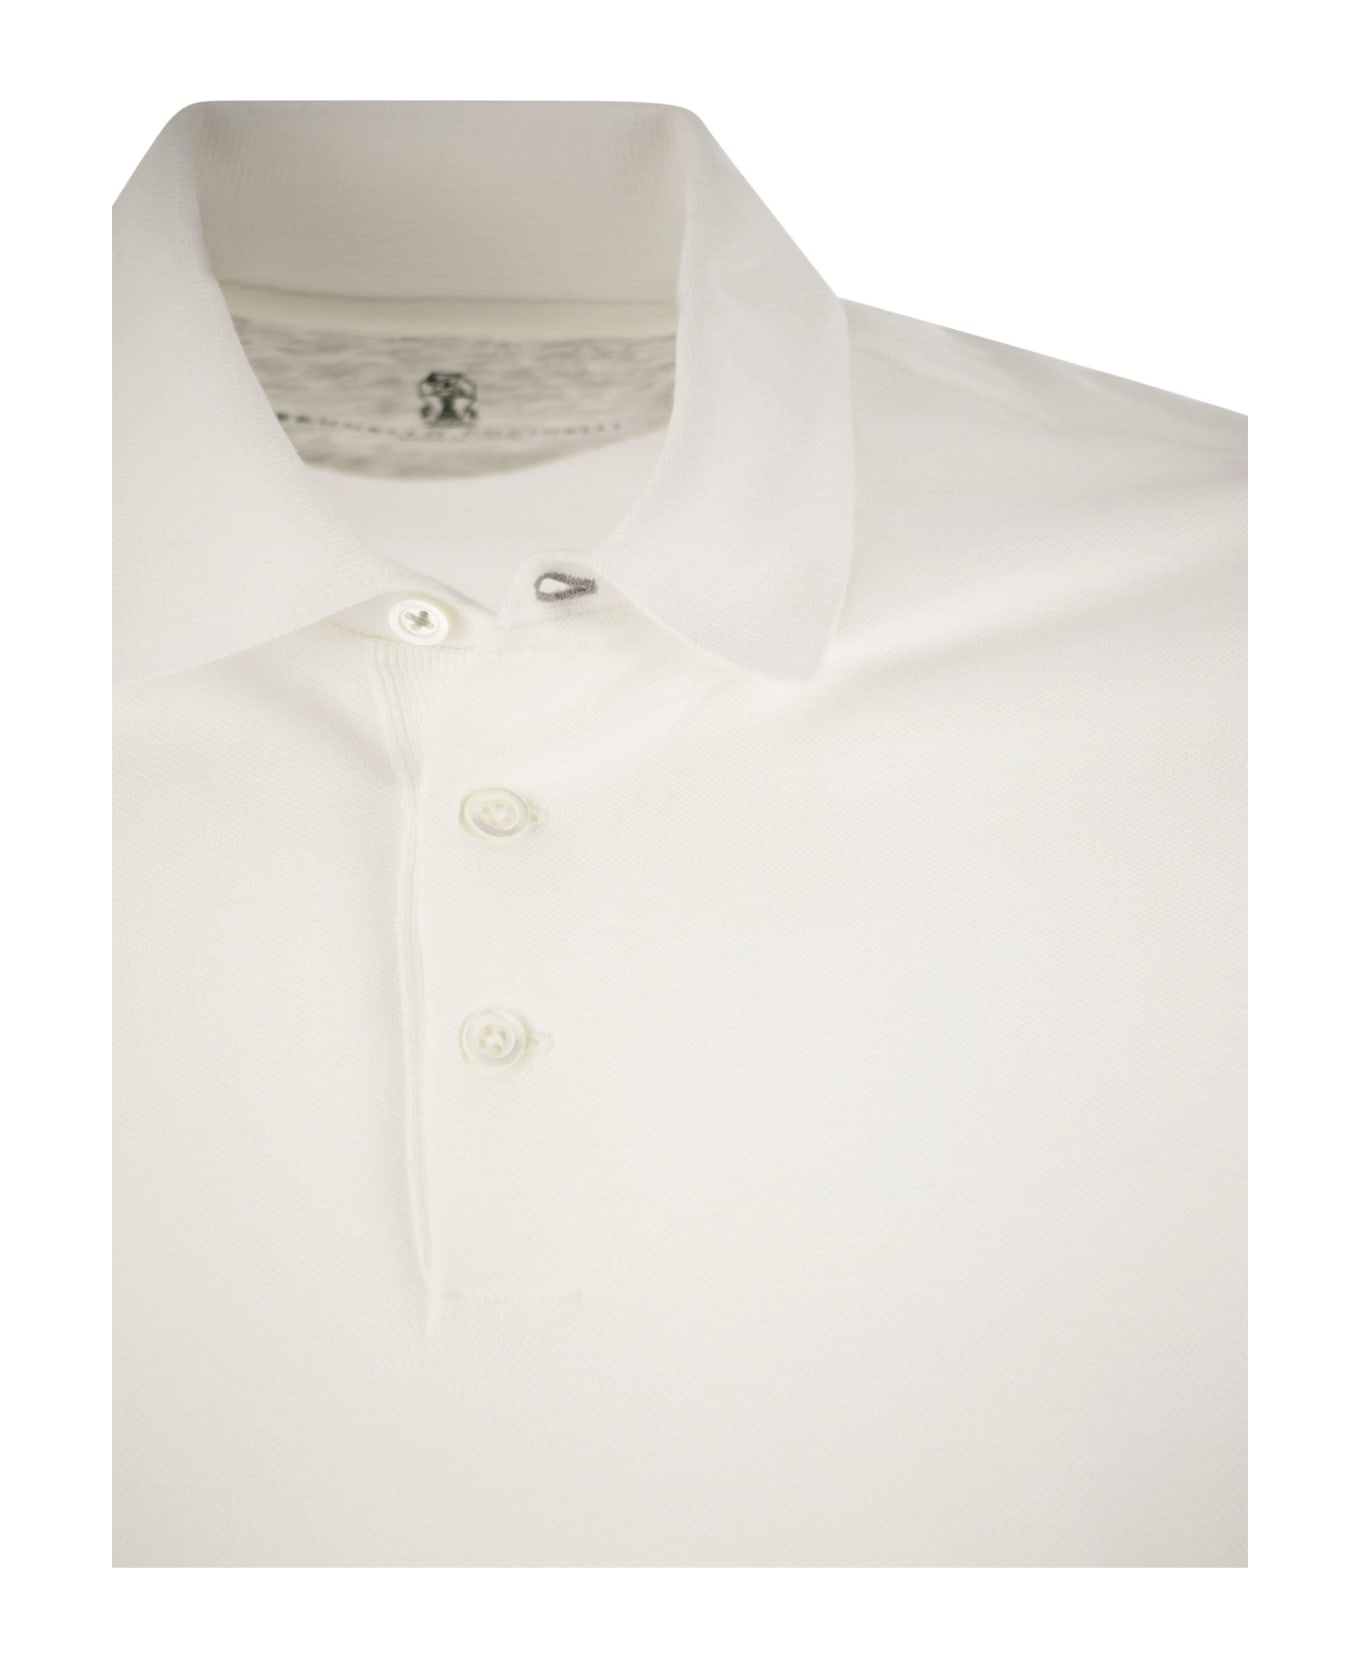 Brunello Cucinelli Cotton Jersey Polo Shirt - White